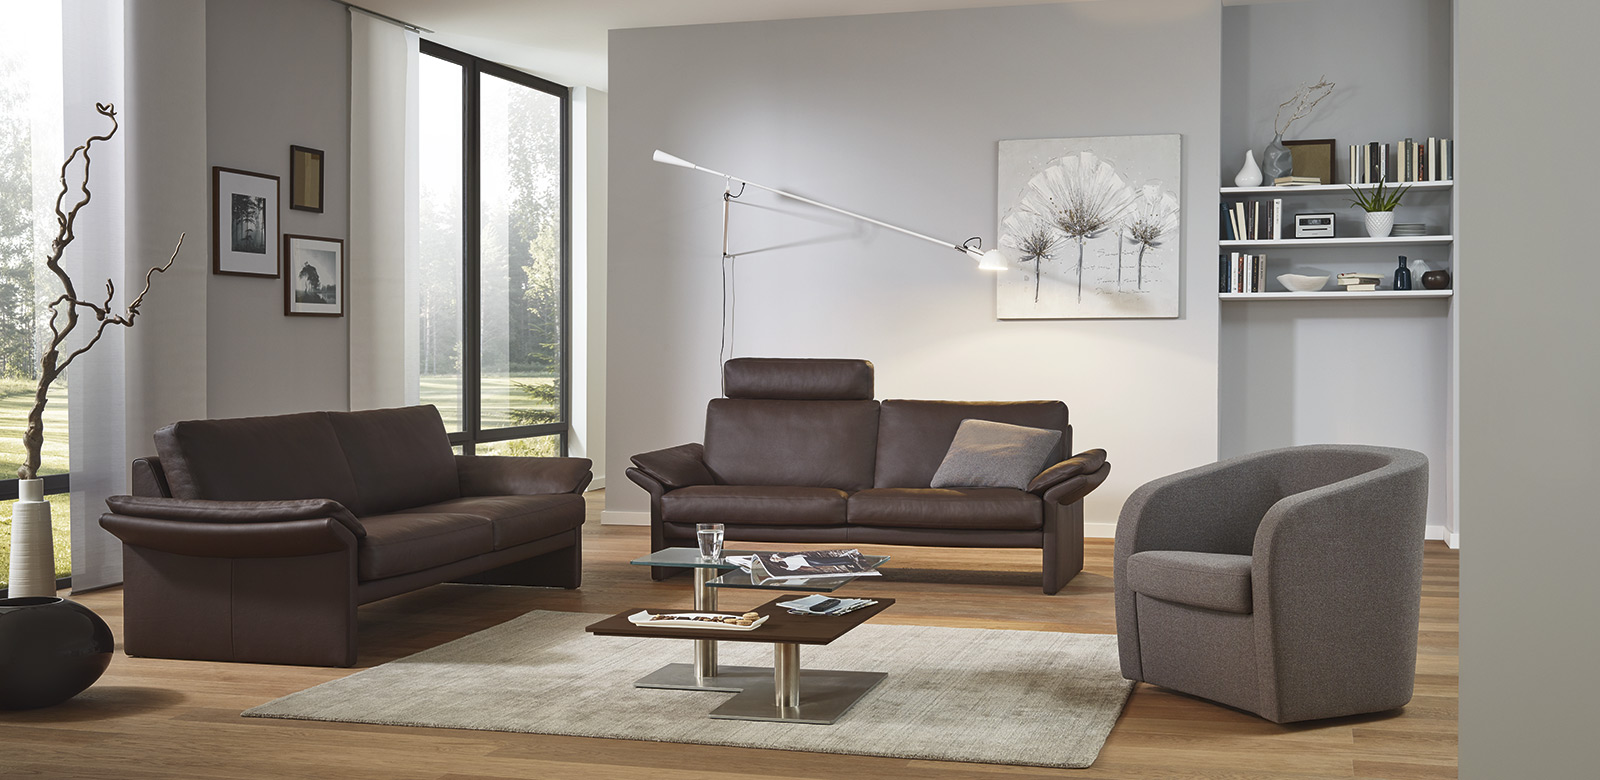 Zwei CL910 Sofas aus braunem Leder und Sessel aus grauem Stoff in modernem Wohnzimmer und Terrasse zum große Grundstück